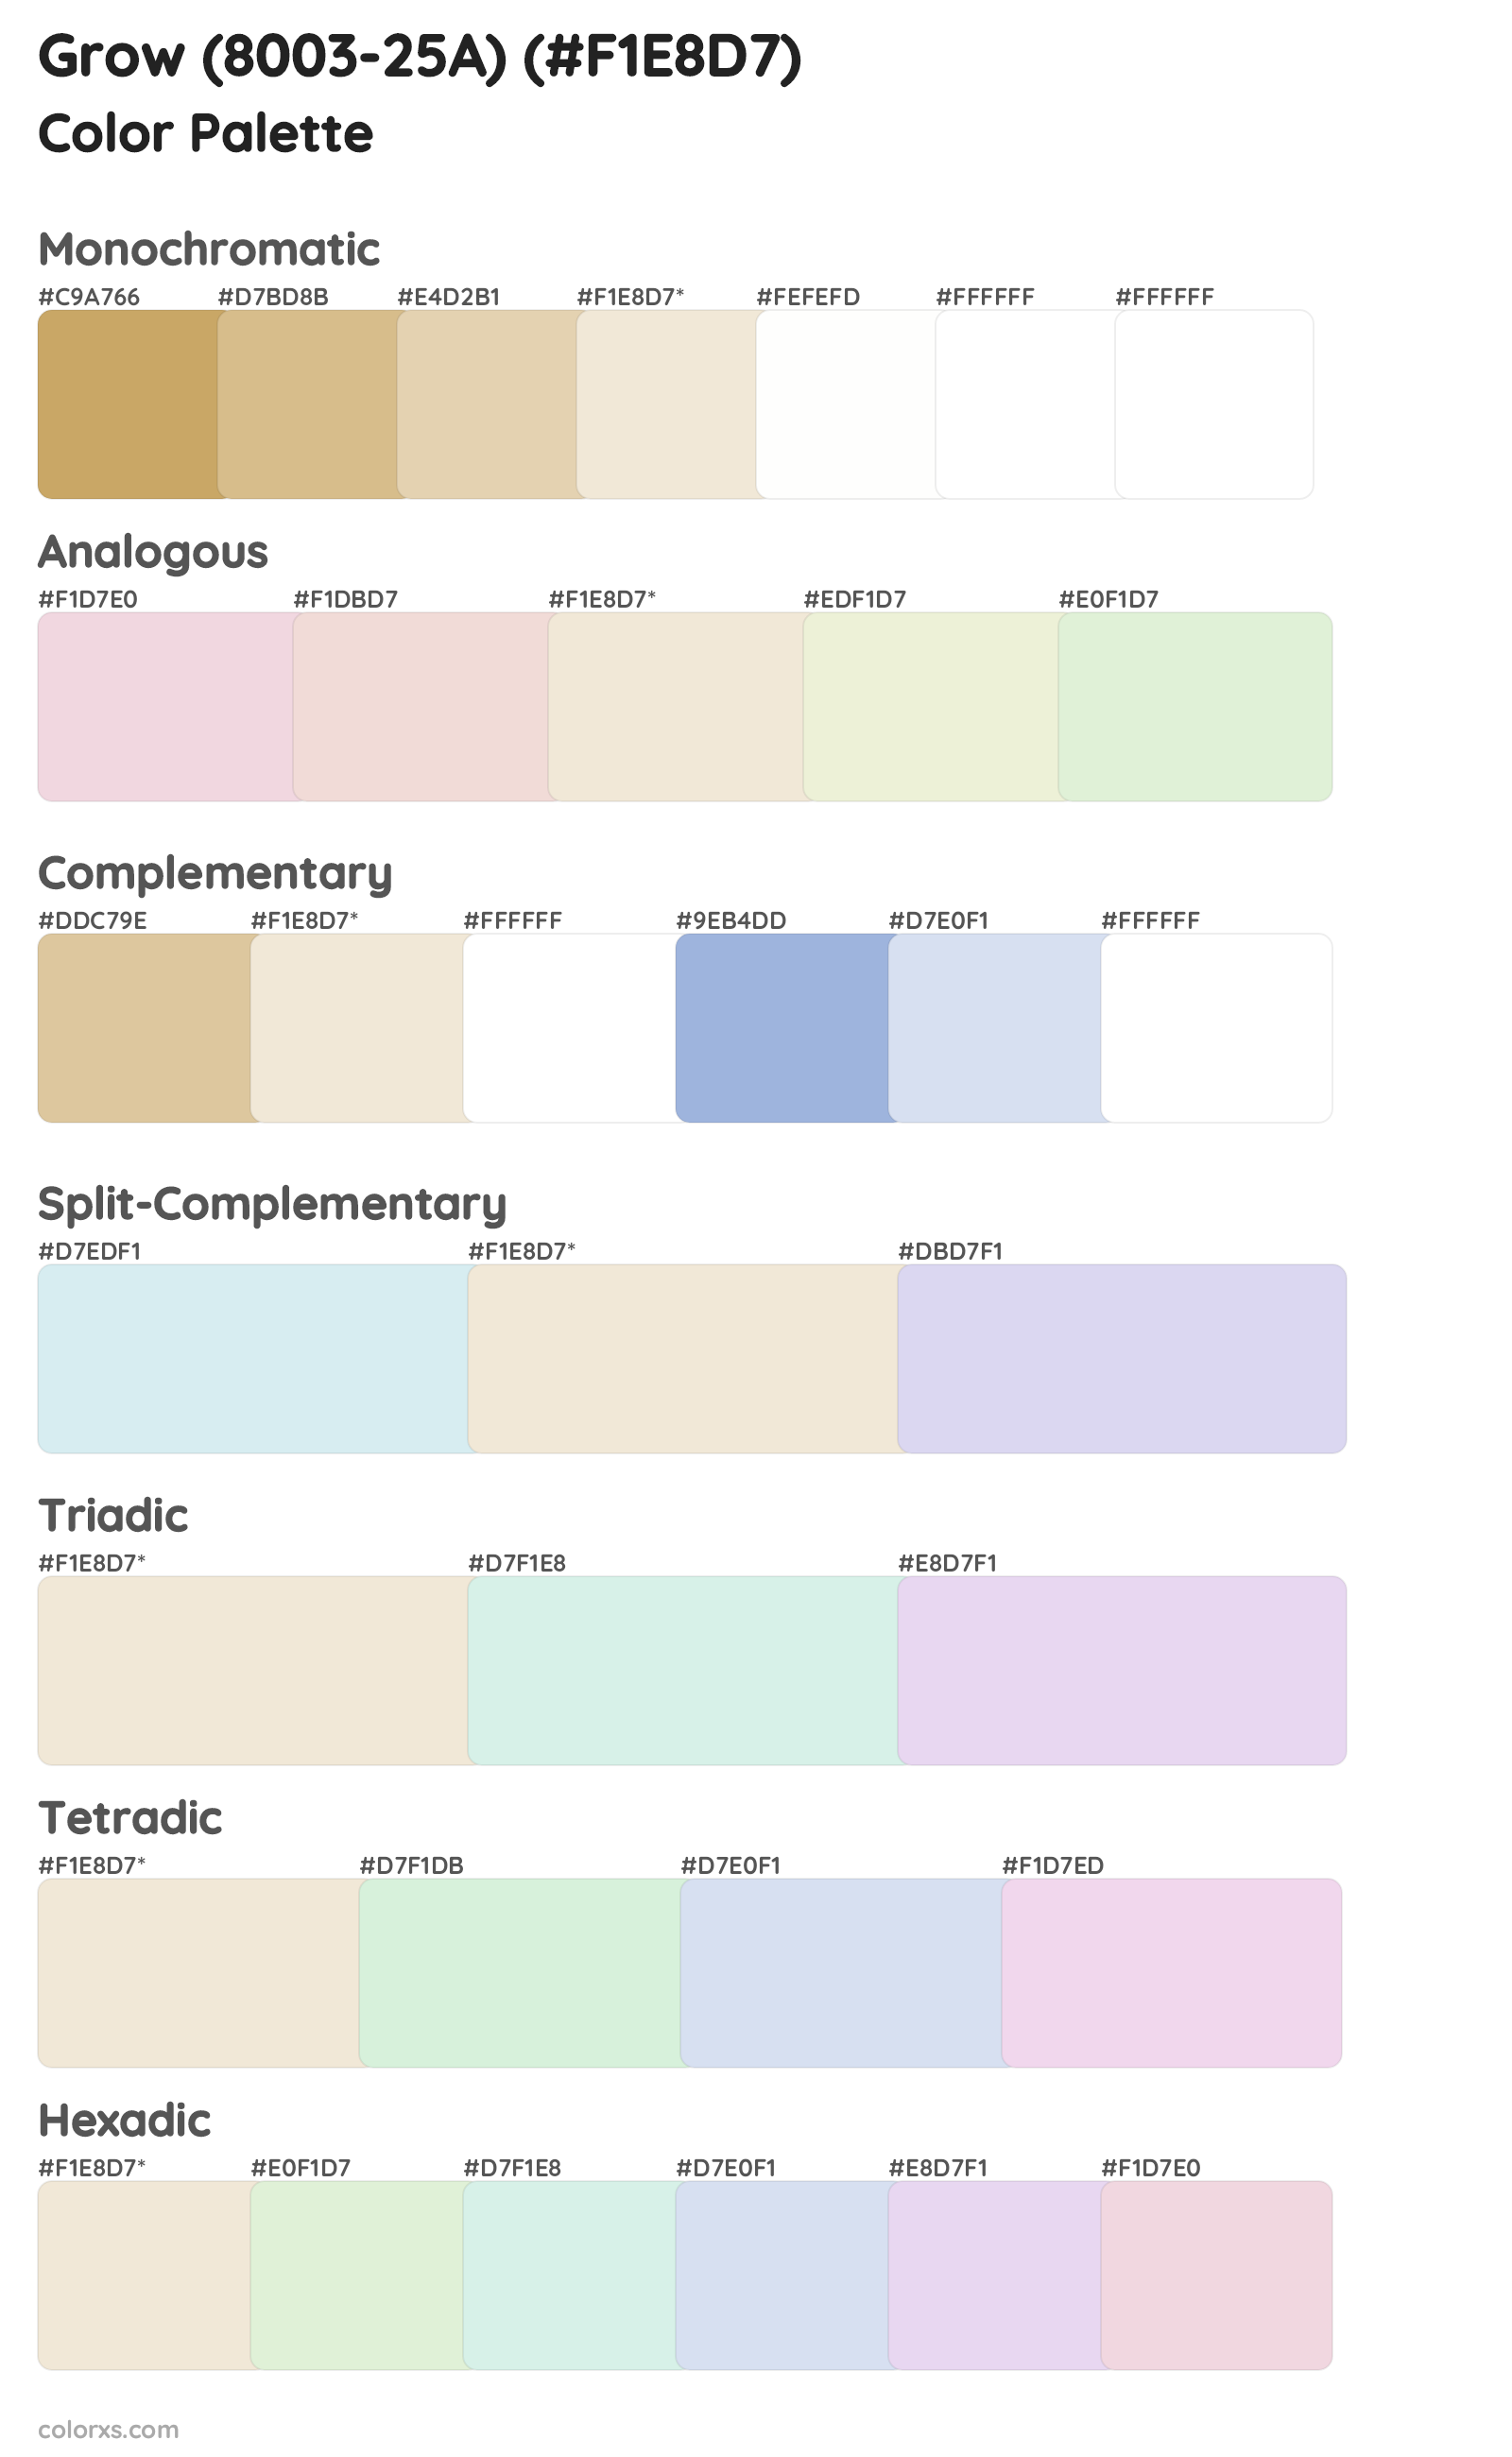 Grow (8003-25A) Color Scheme Palettes